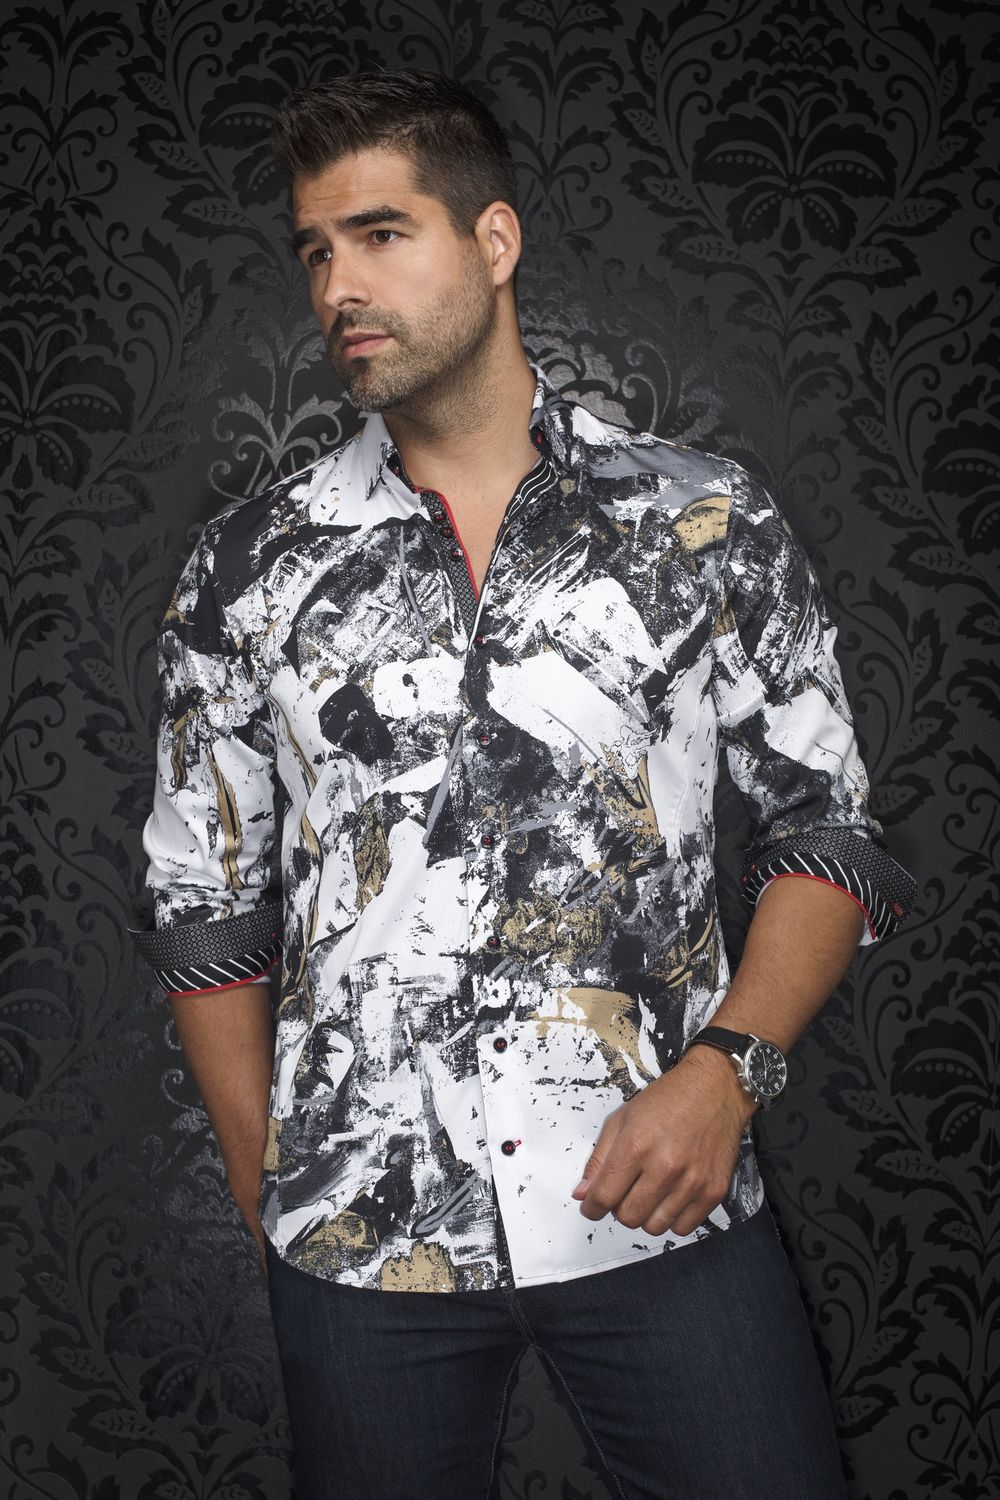 Omar Long Sleeve Sport Shirt, Size: 4-L, Colour: White Gold, Model: Omar